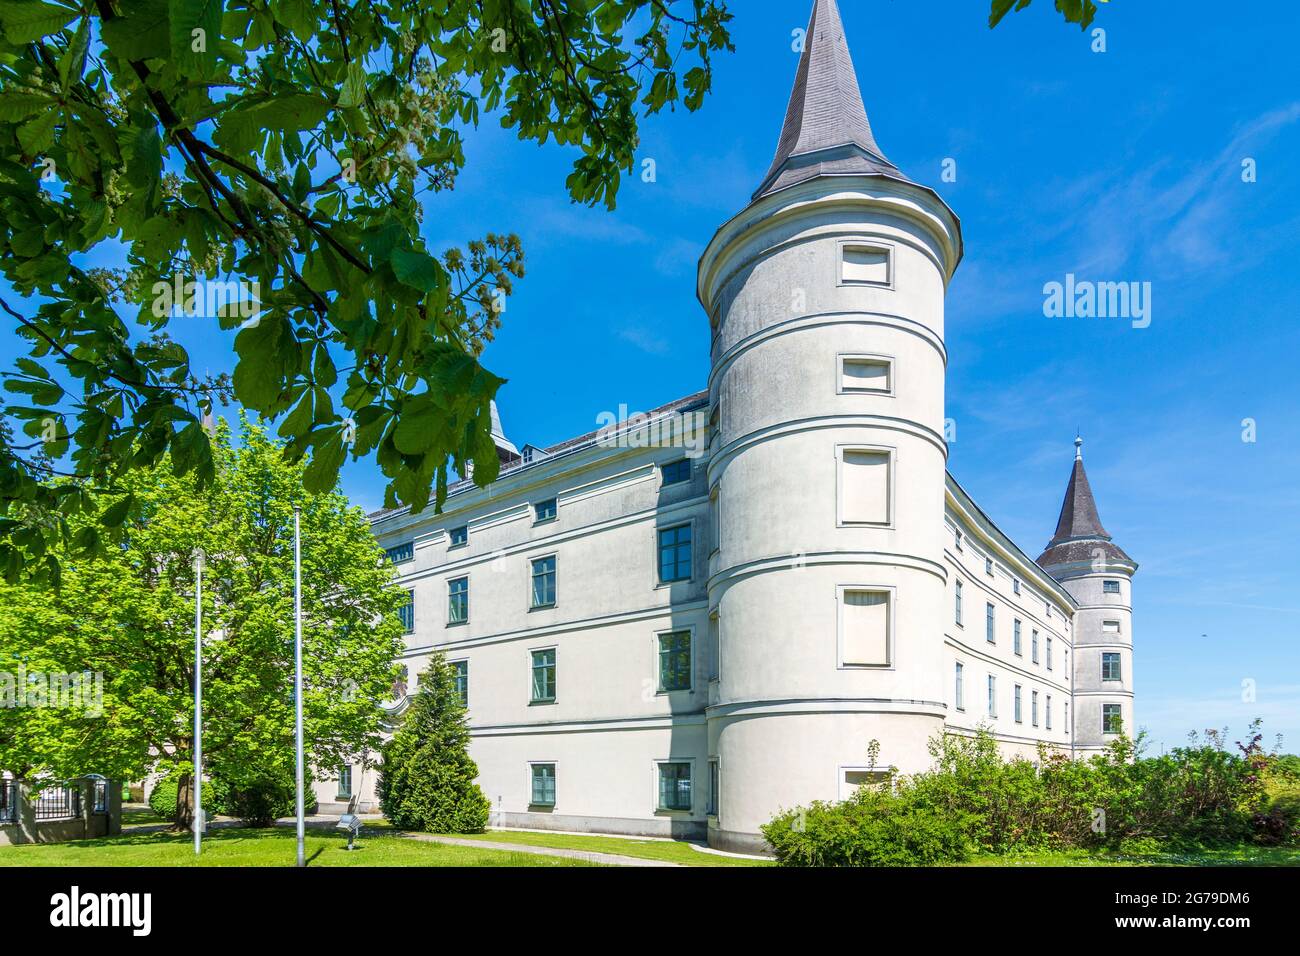 Wolfpassing, Schloss Wolfpassing Castle in Mostviertel region, Niederösterreich / Lower Austria, Austria Stock Photo